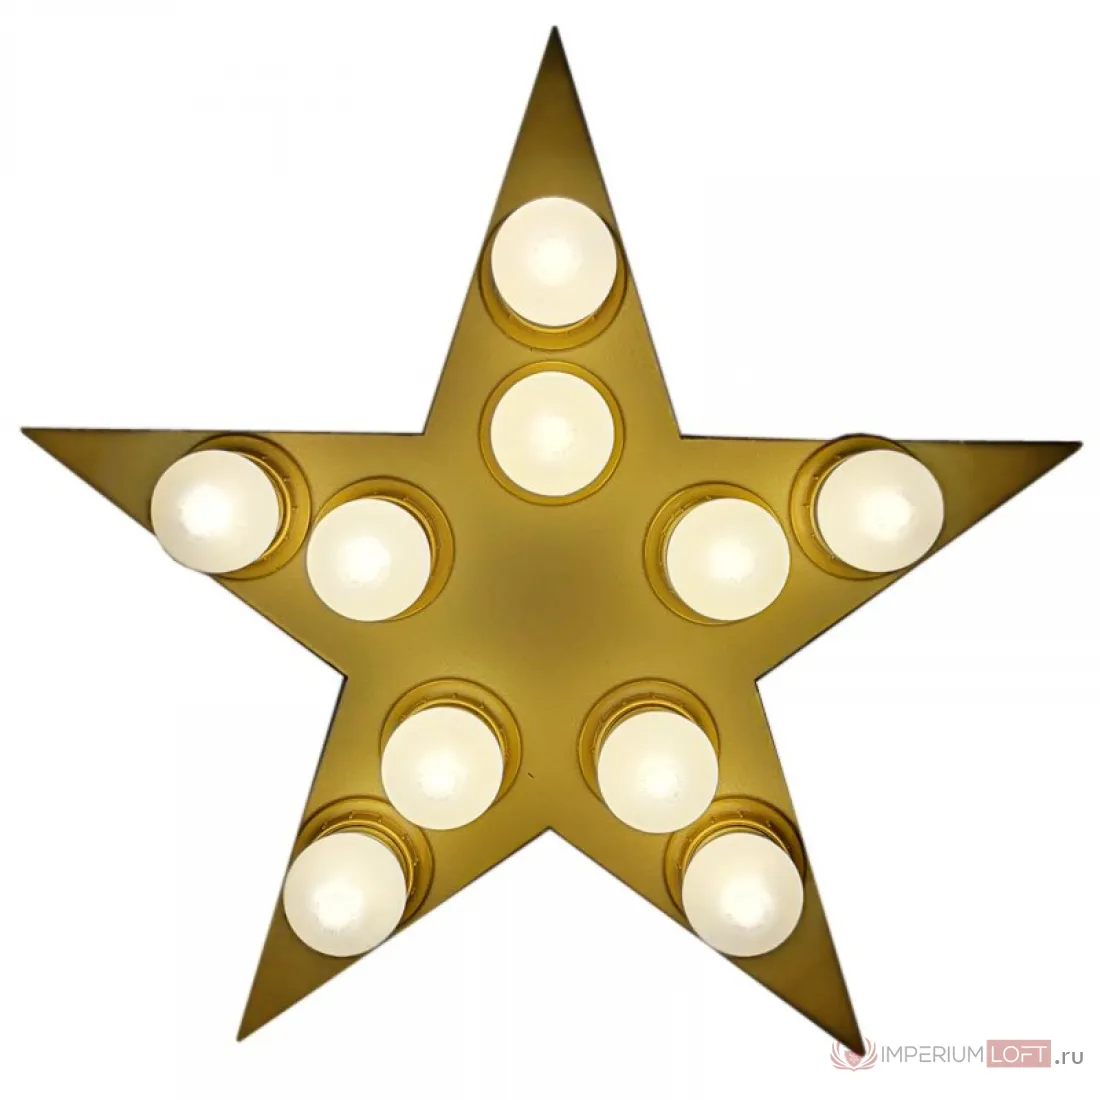 ✓ Настенный светильник Star золотая звезда от LoftConcept по оптовым ценамс быстрой доставкой по России